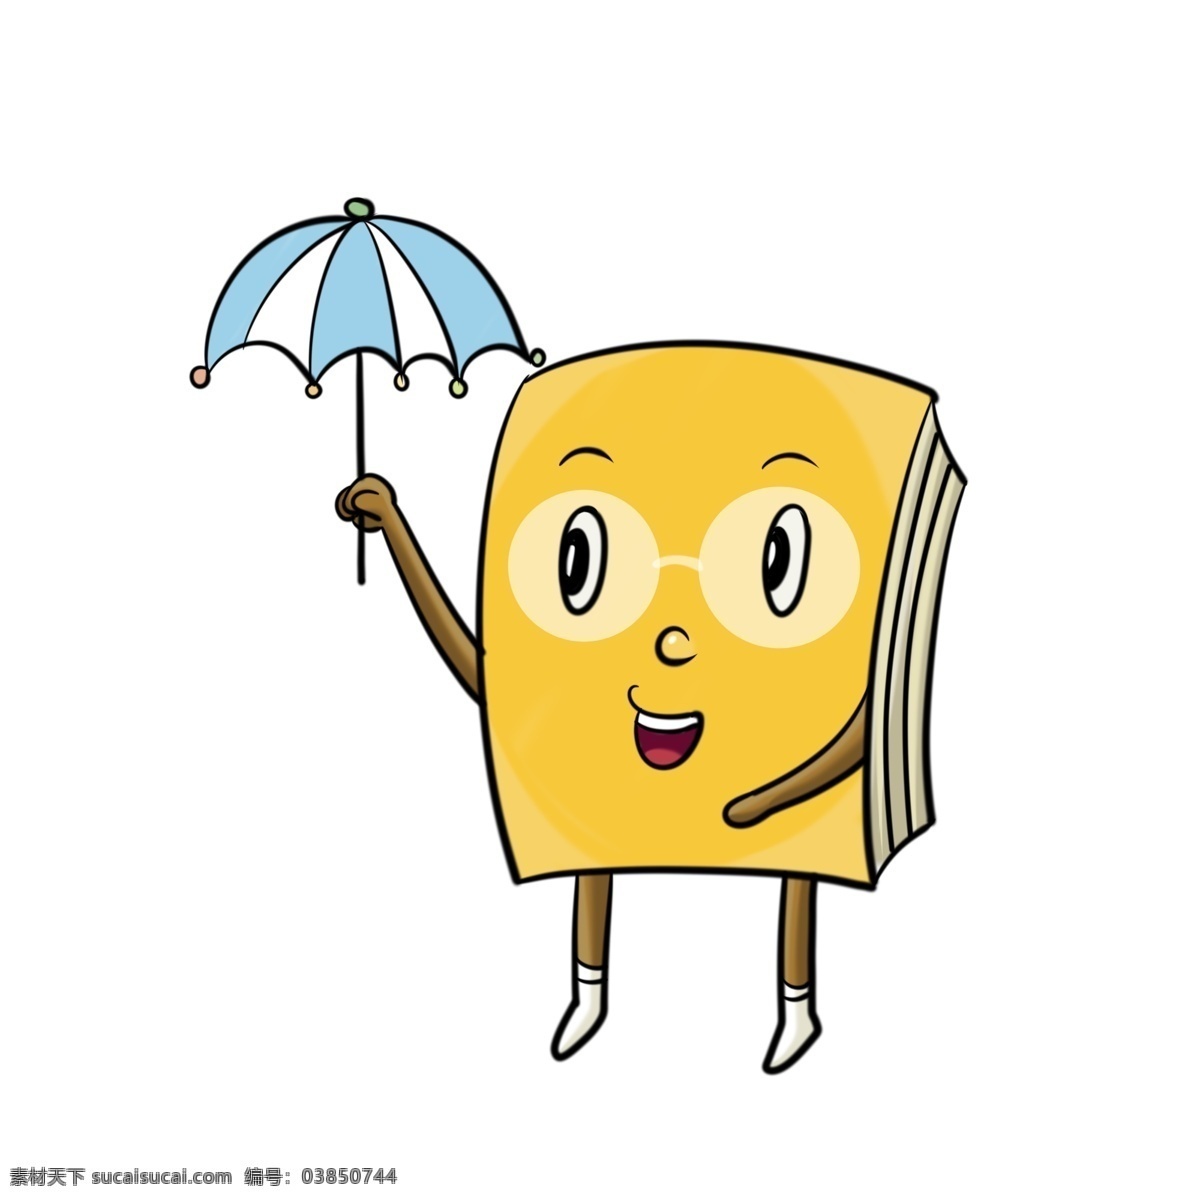 打伞 书本 装饰 插画 打伞的书本 黄色的书本 漂亮的书本 创意书本 立体书本 卡通书本 书本插画